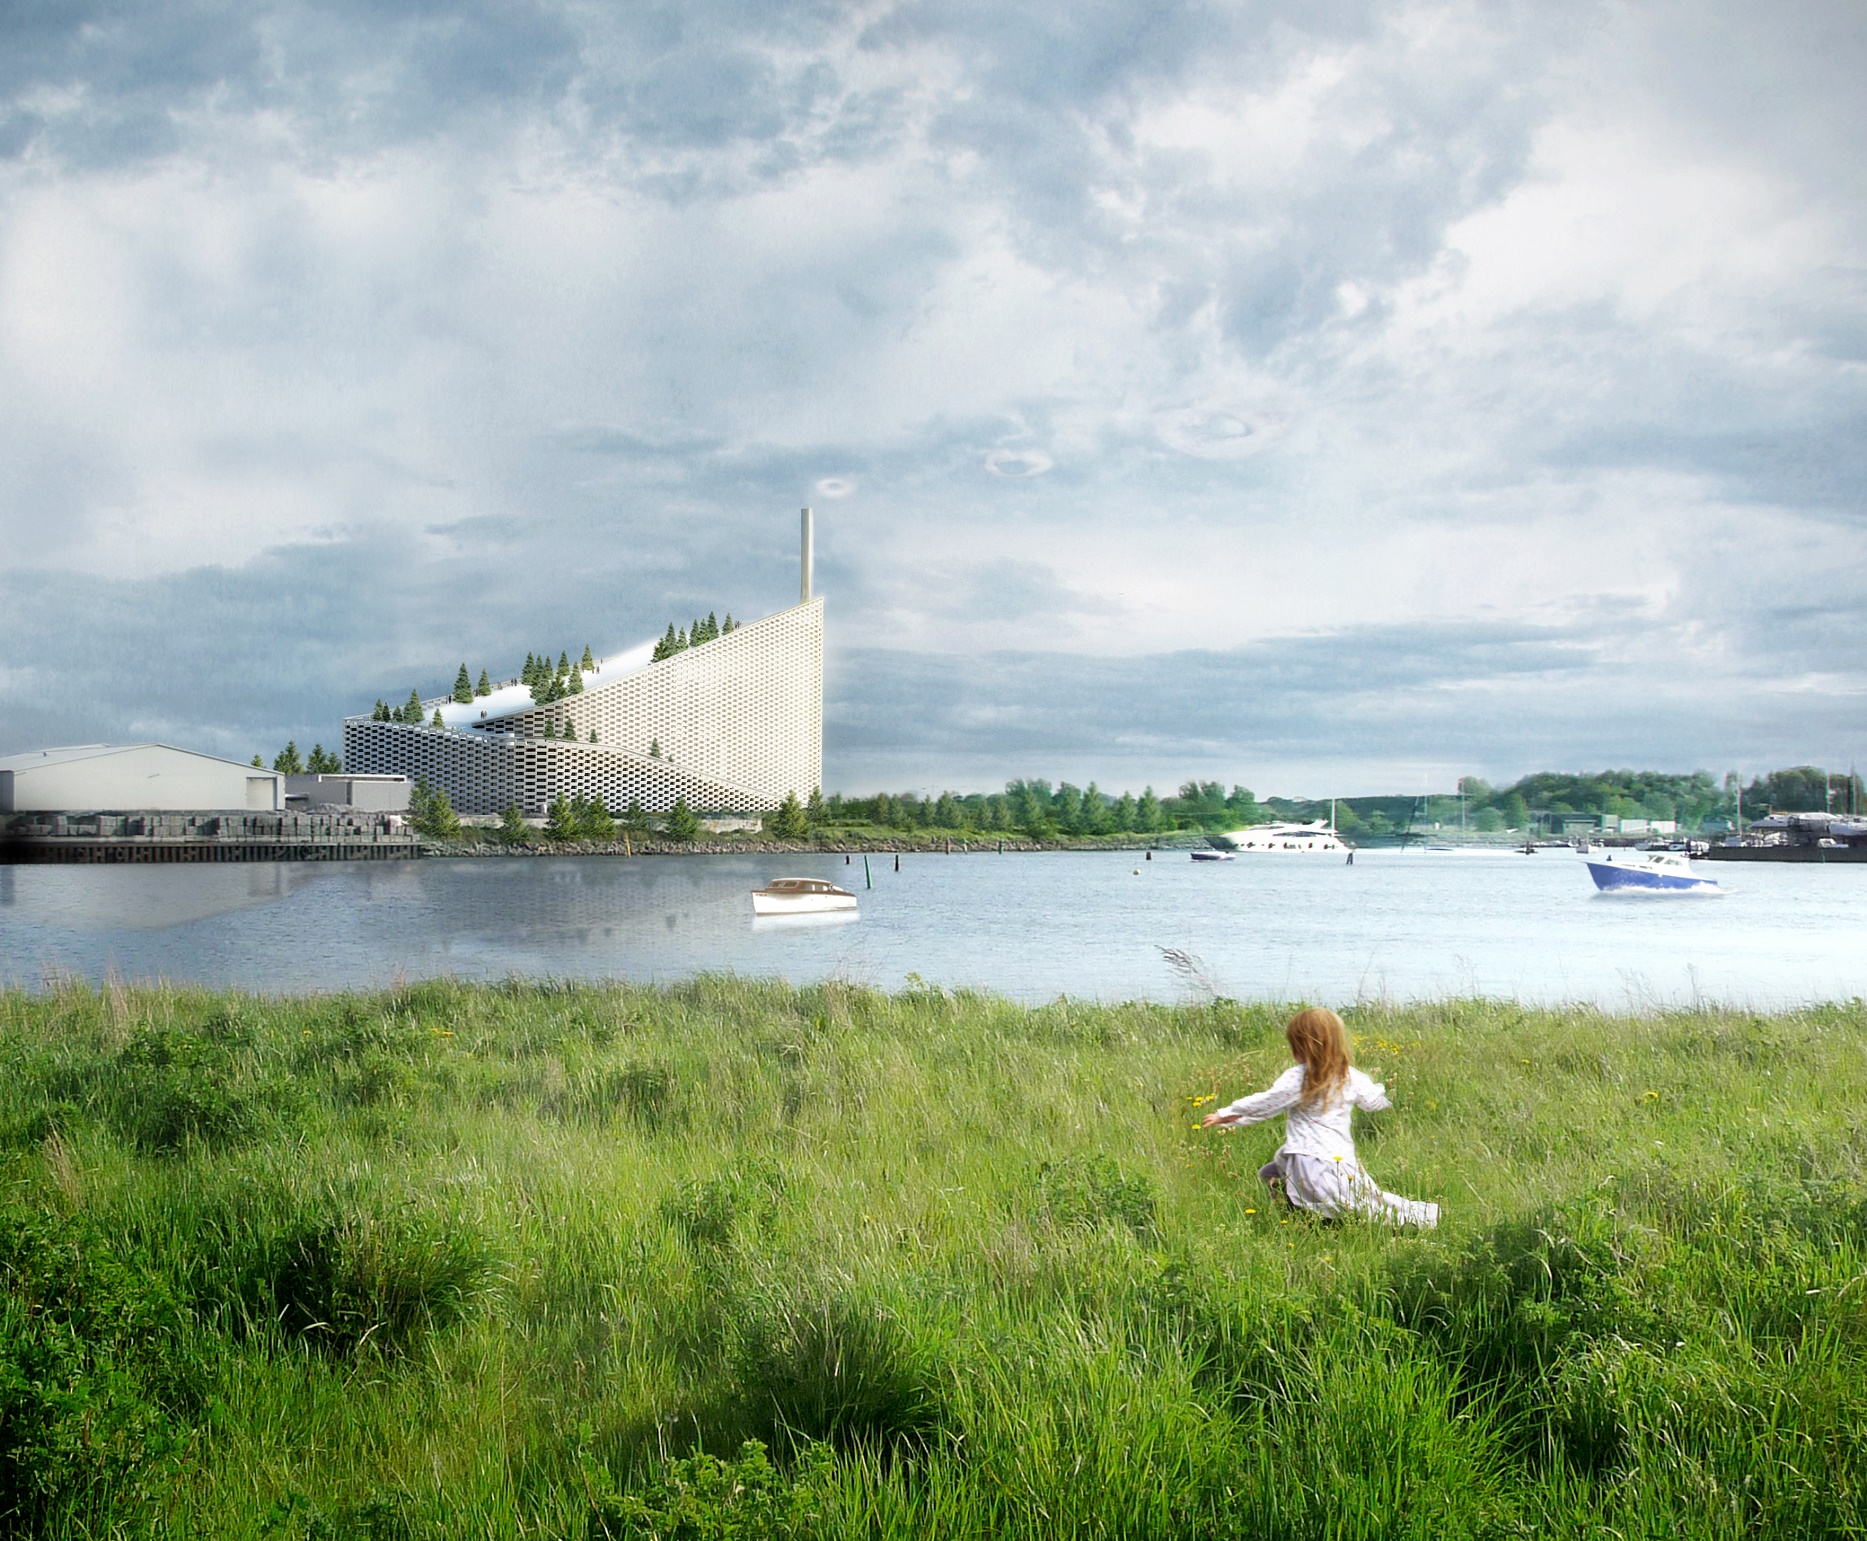 Casa na Dinamarca será totalmente construída com materiais reciclados